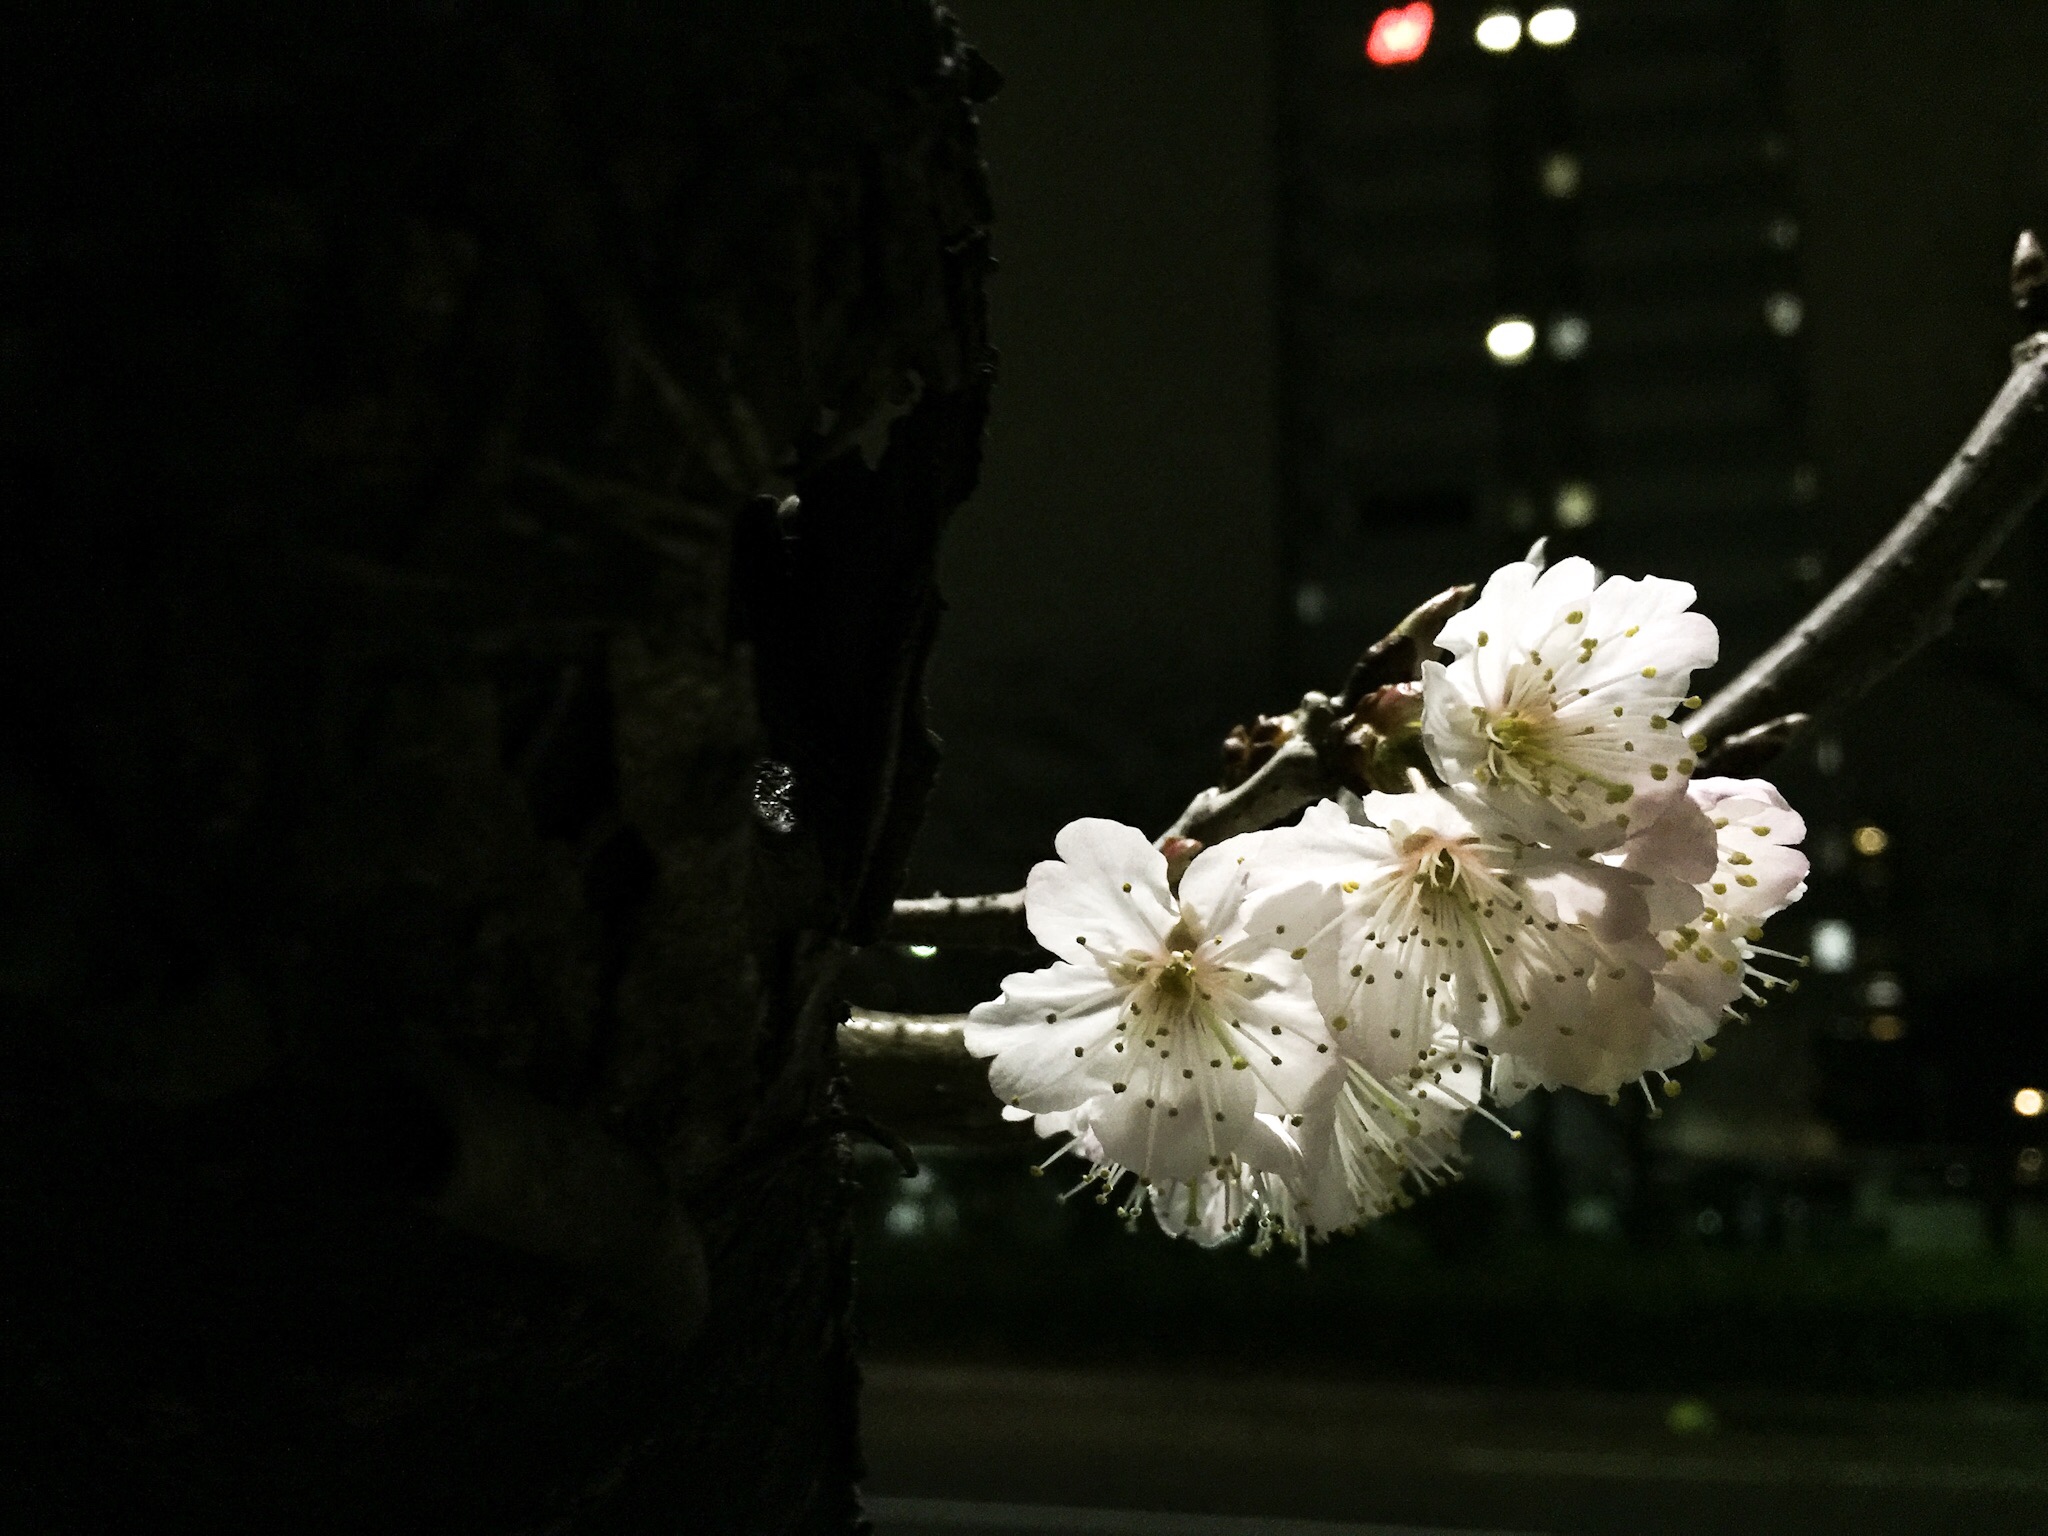 明石町バス停の夜桜